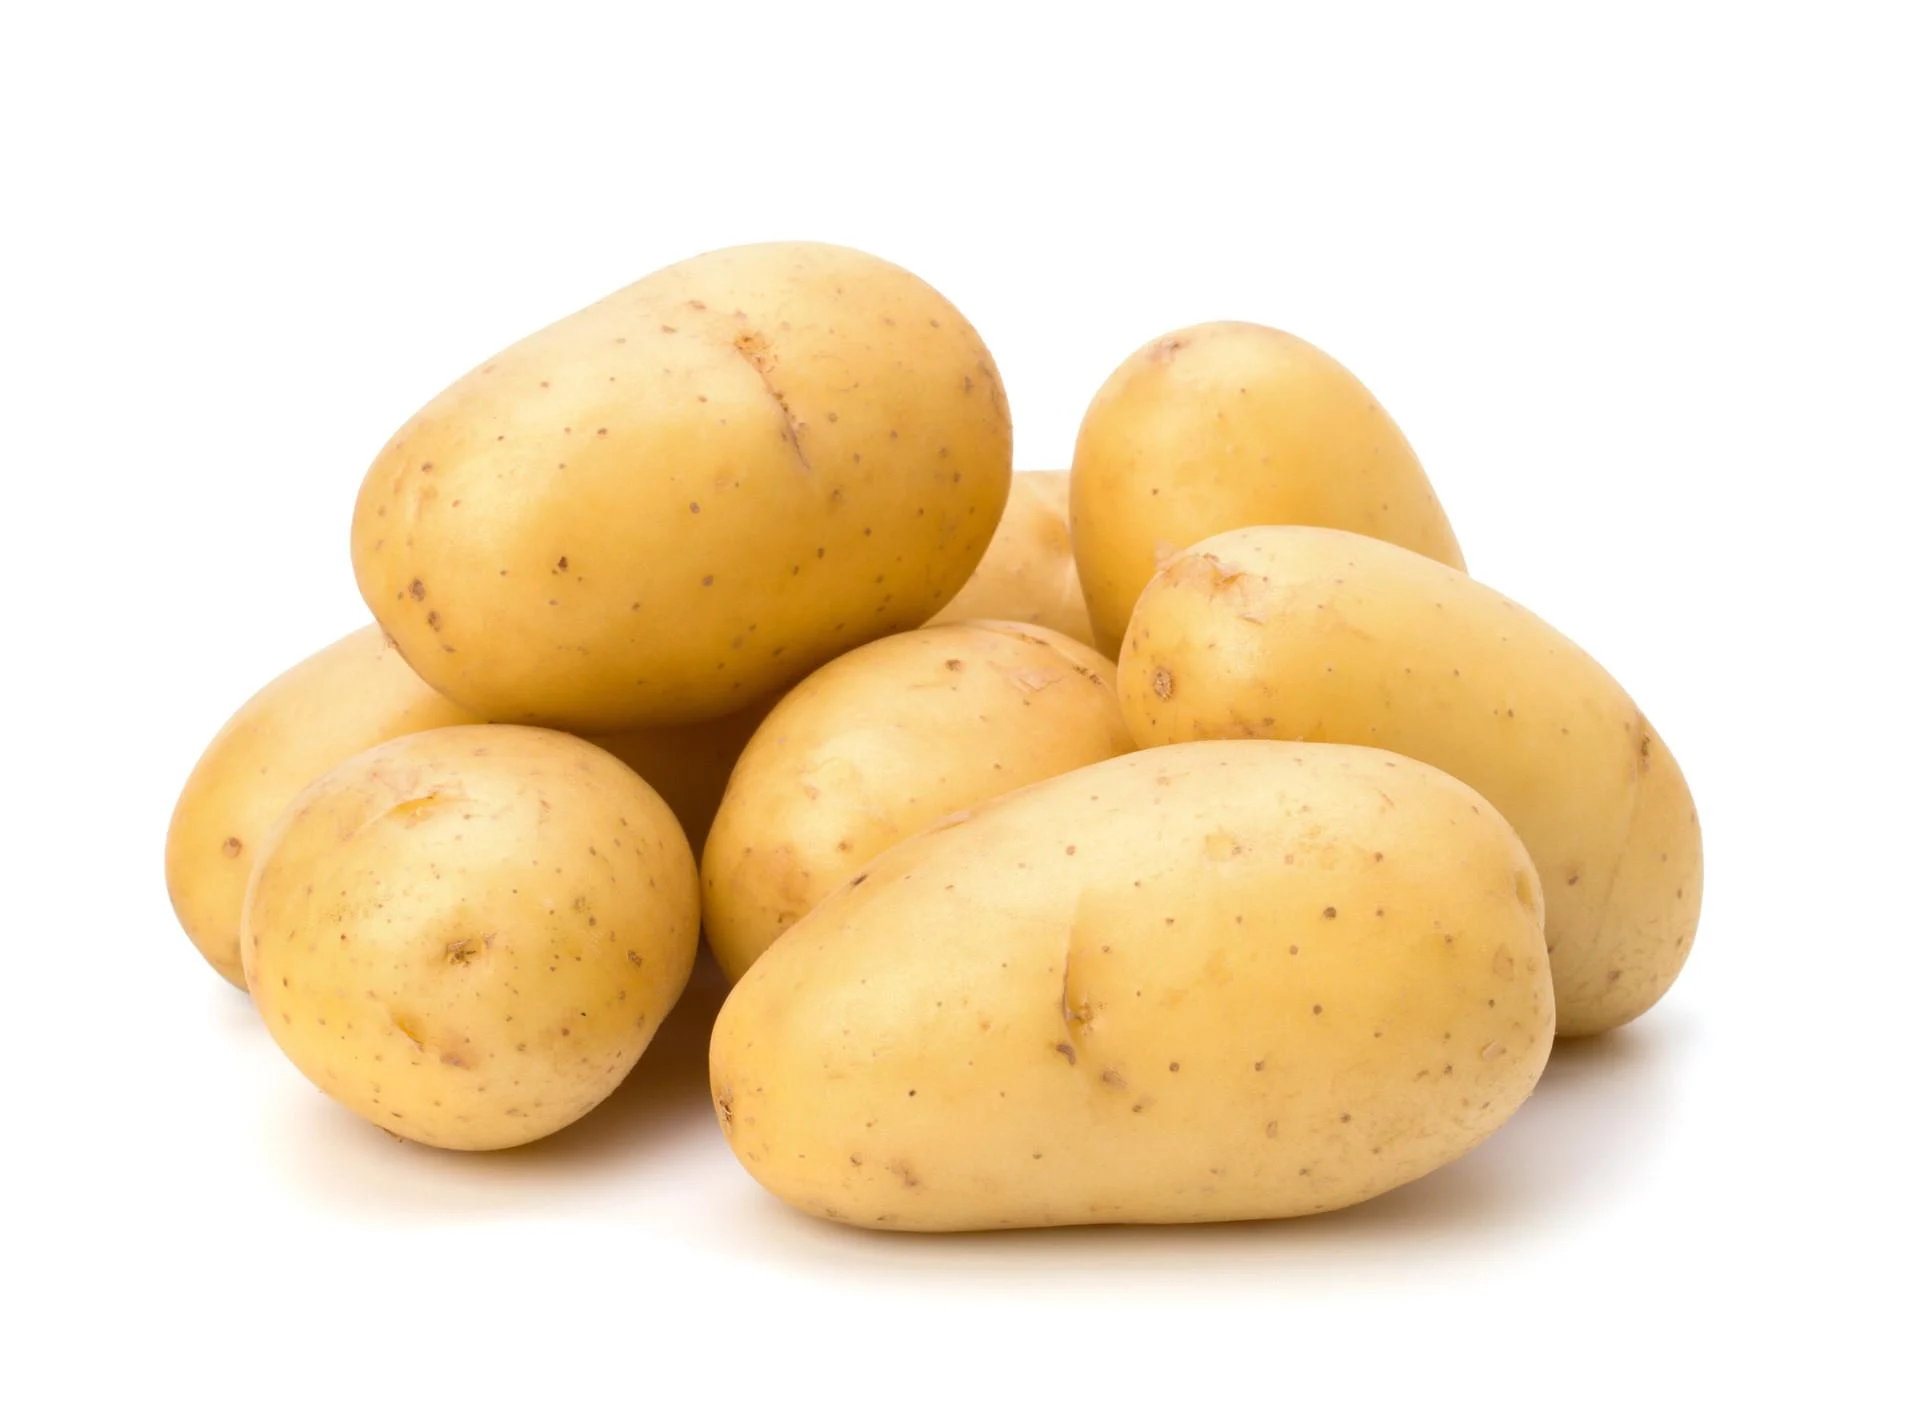 Këta njerëz nuk duhet të hanë patate: Një organ mund ta rrezikojnë shumë